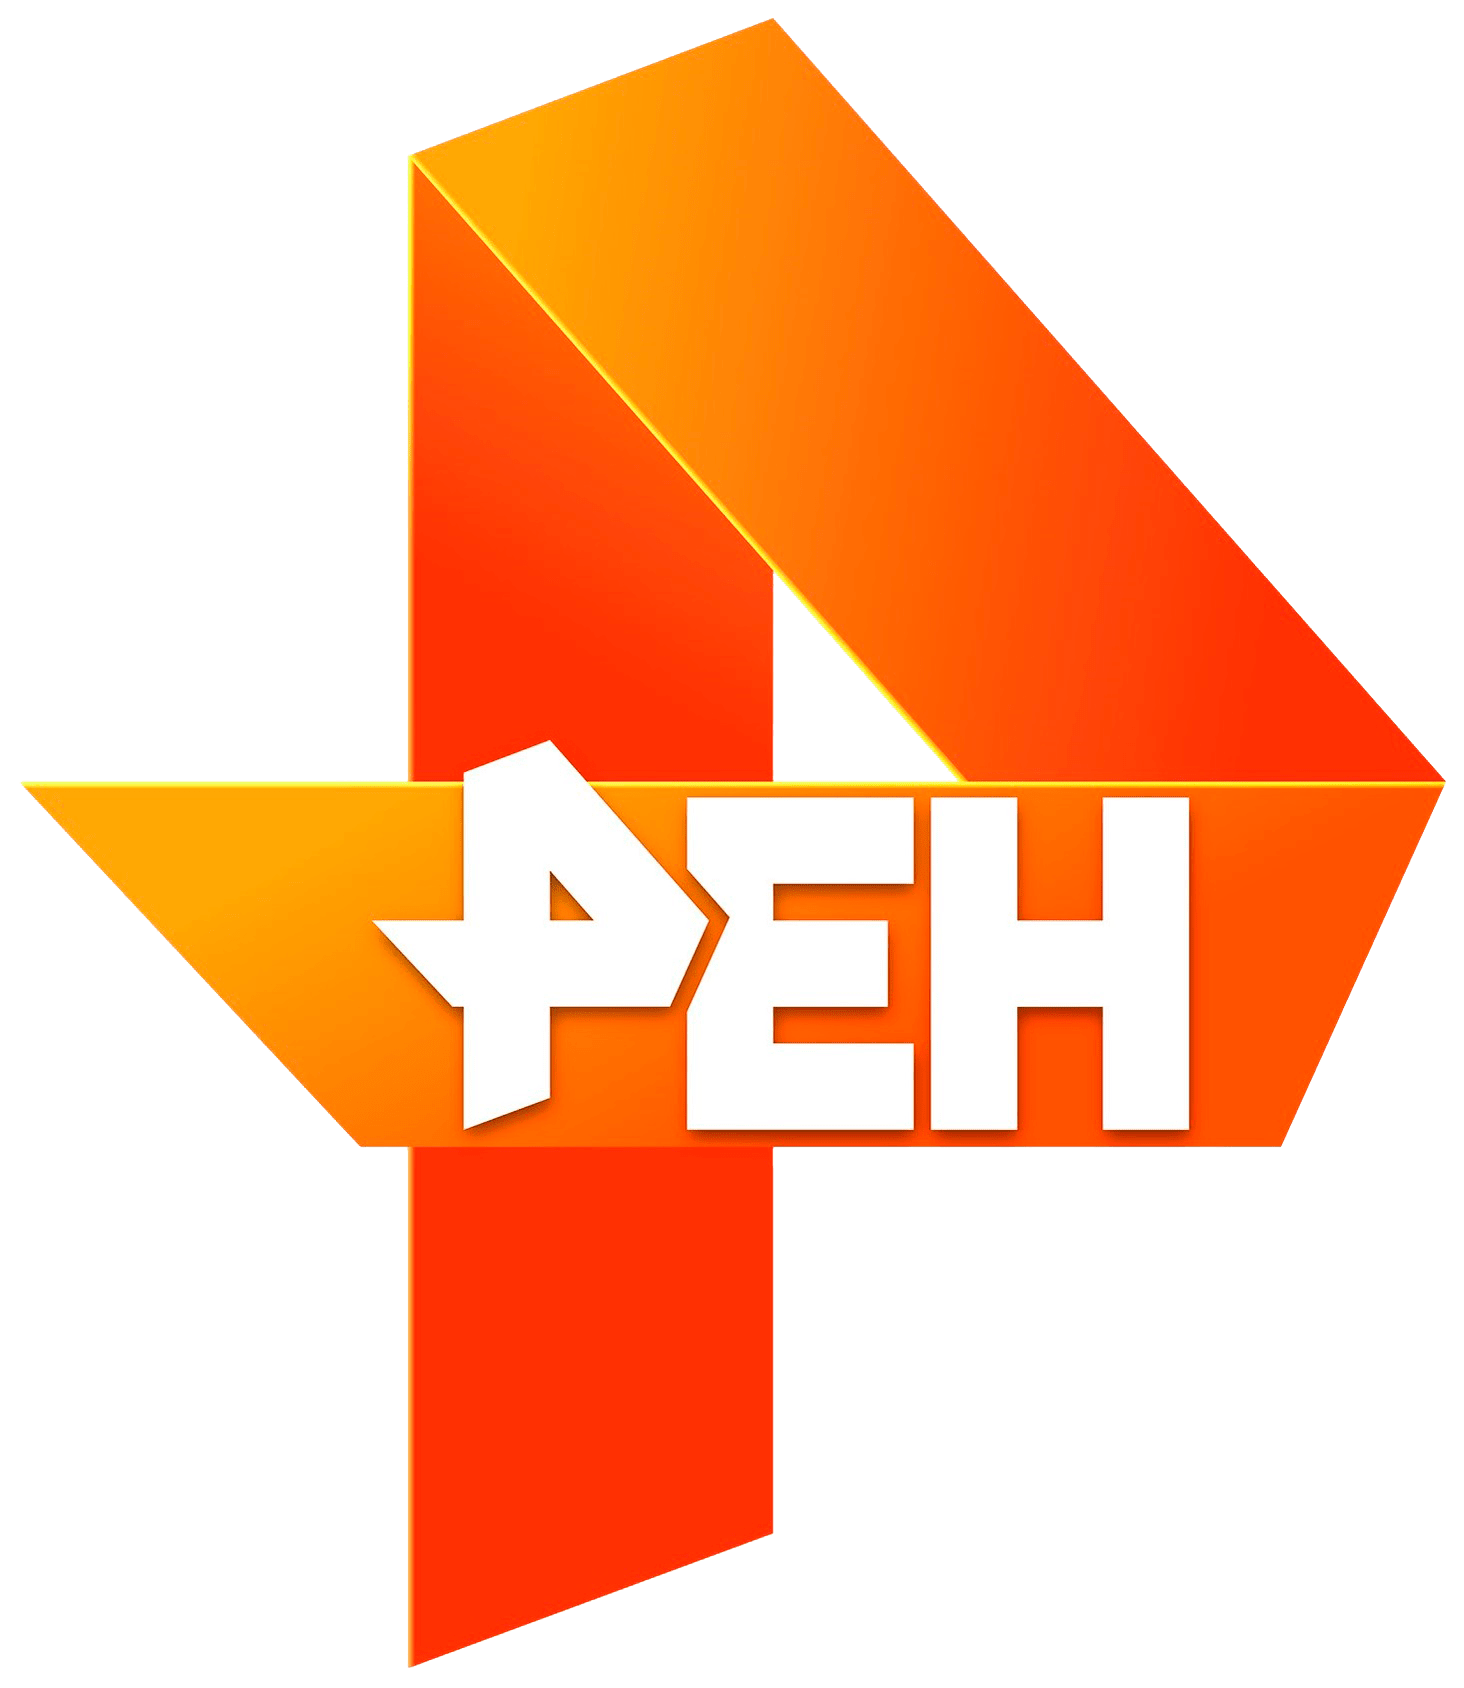 Раземщение рекламы РЕН ТВ, г.Калининград